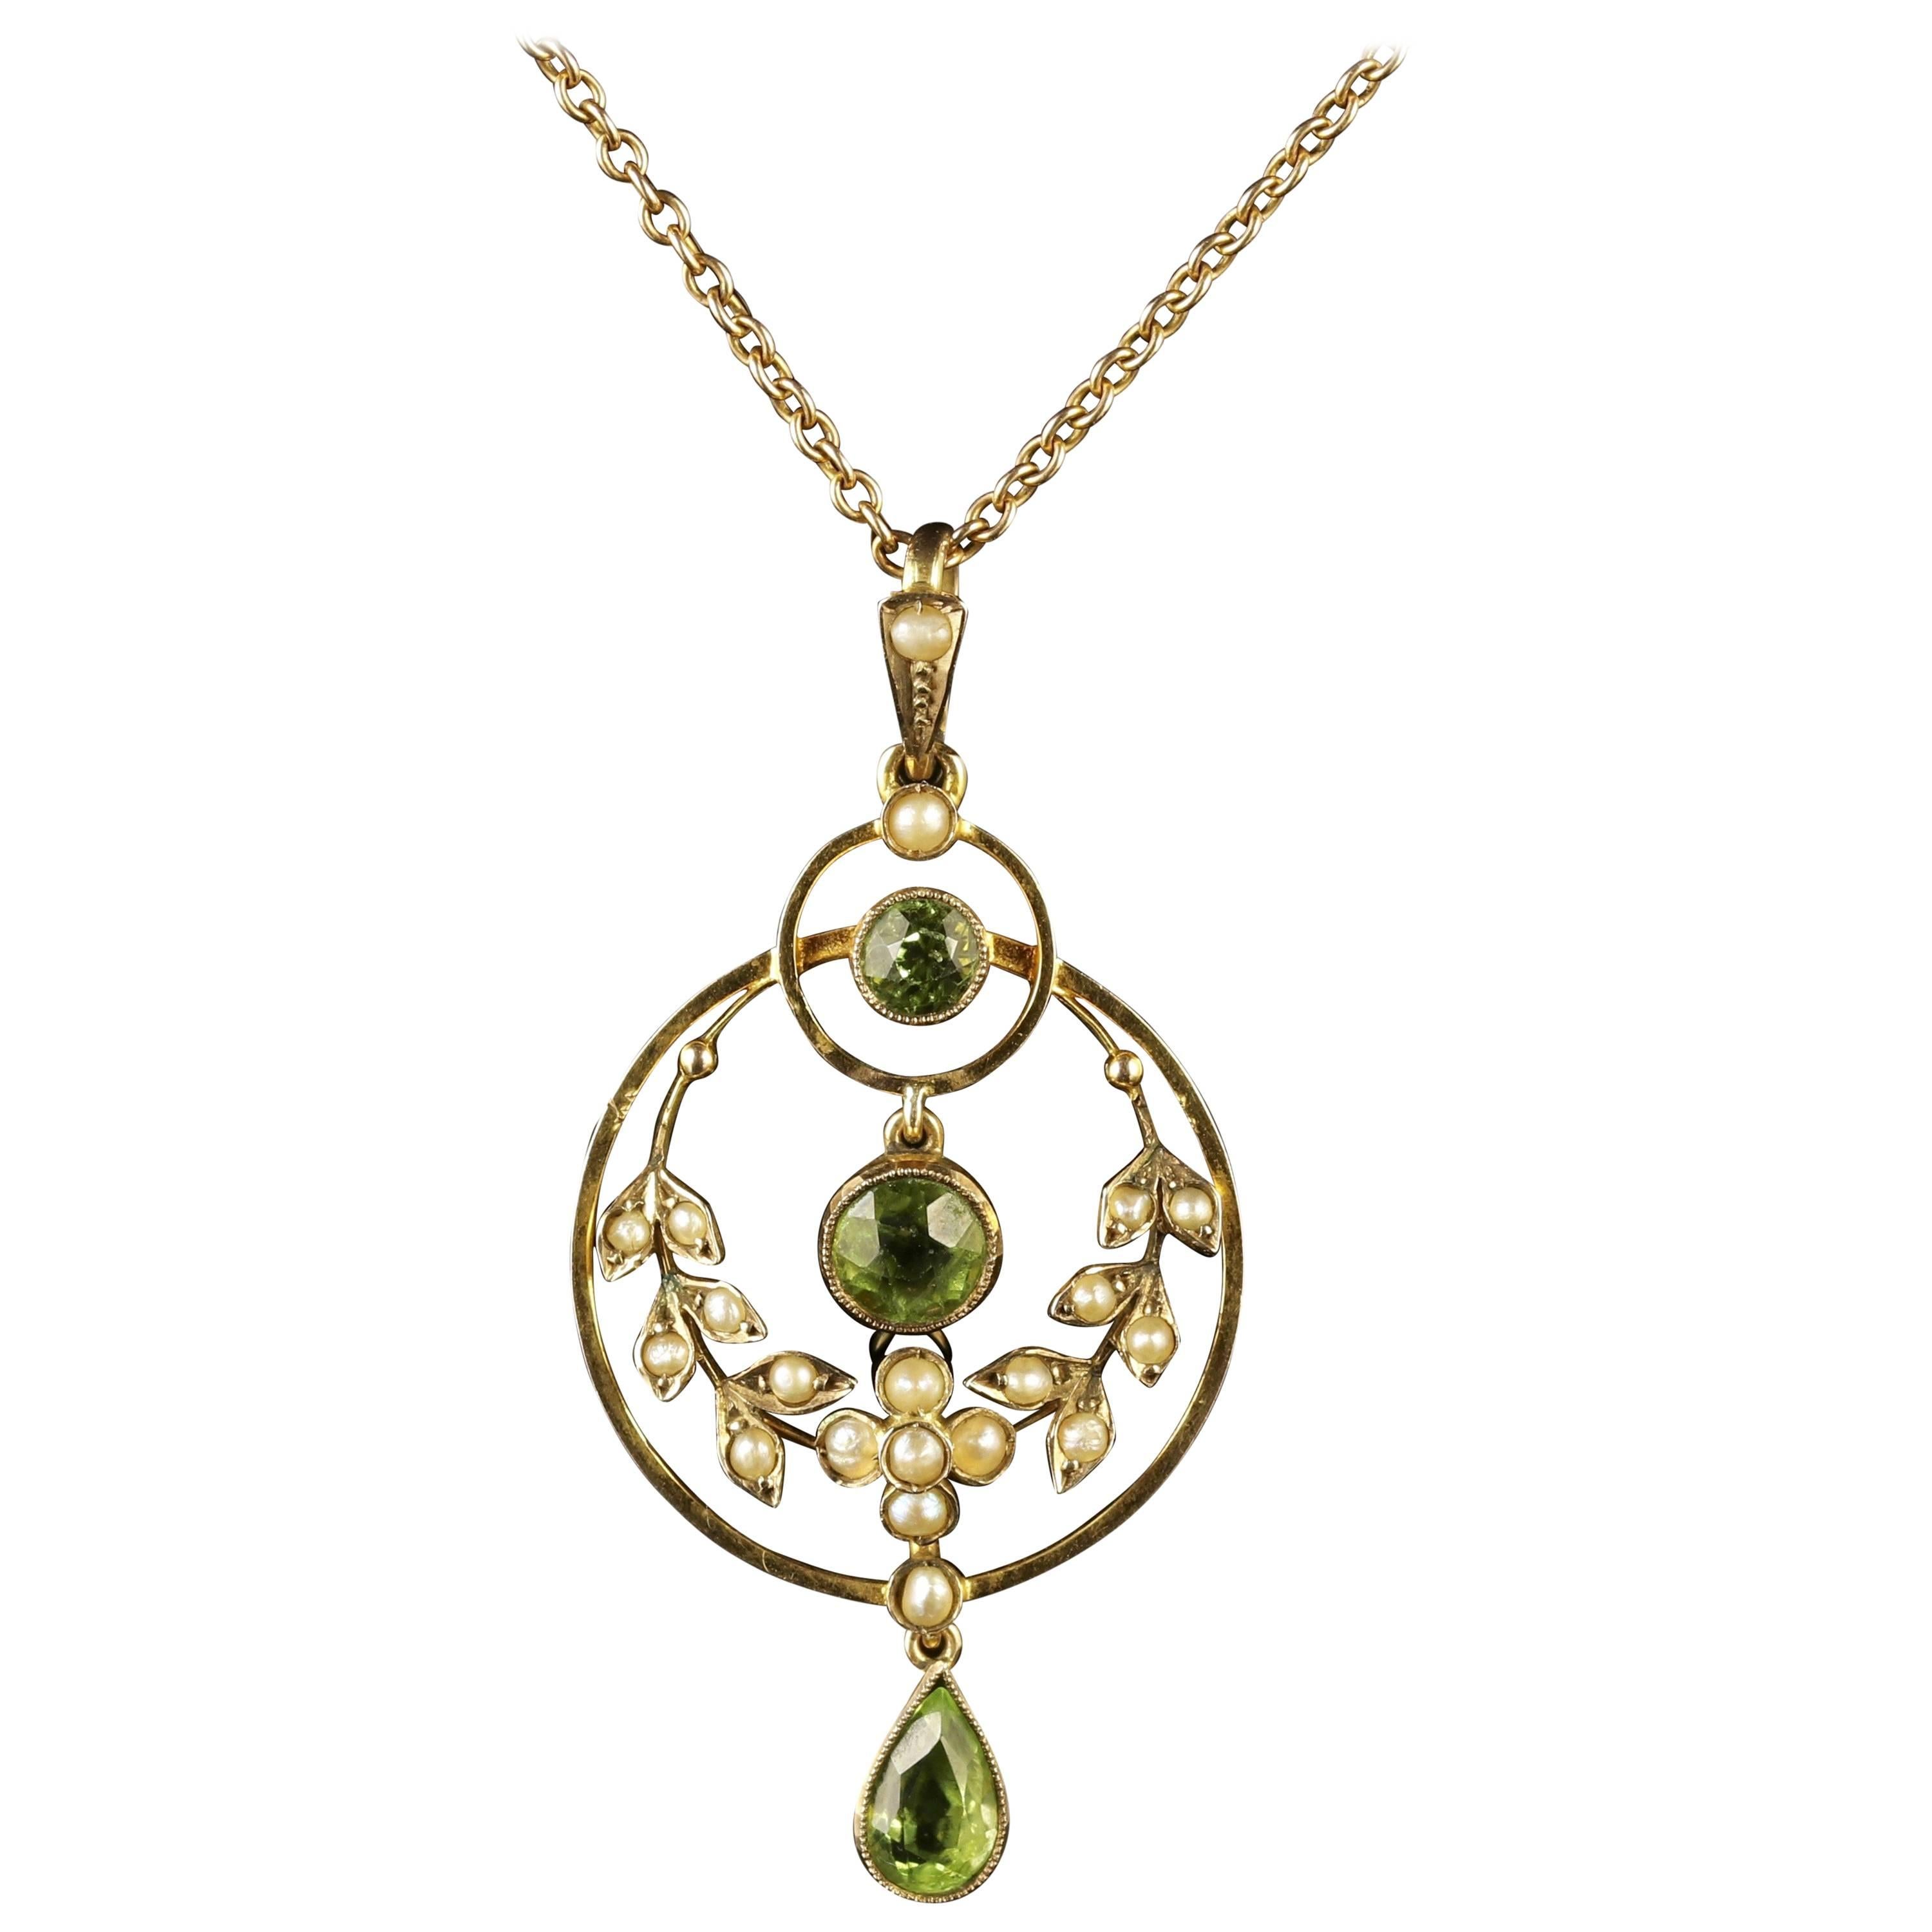 Antique Victorian Peridot Pearl Gold Pendant Necklace, circa 1900